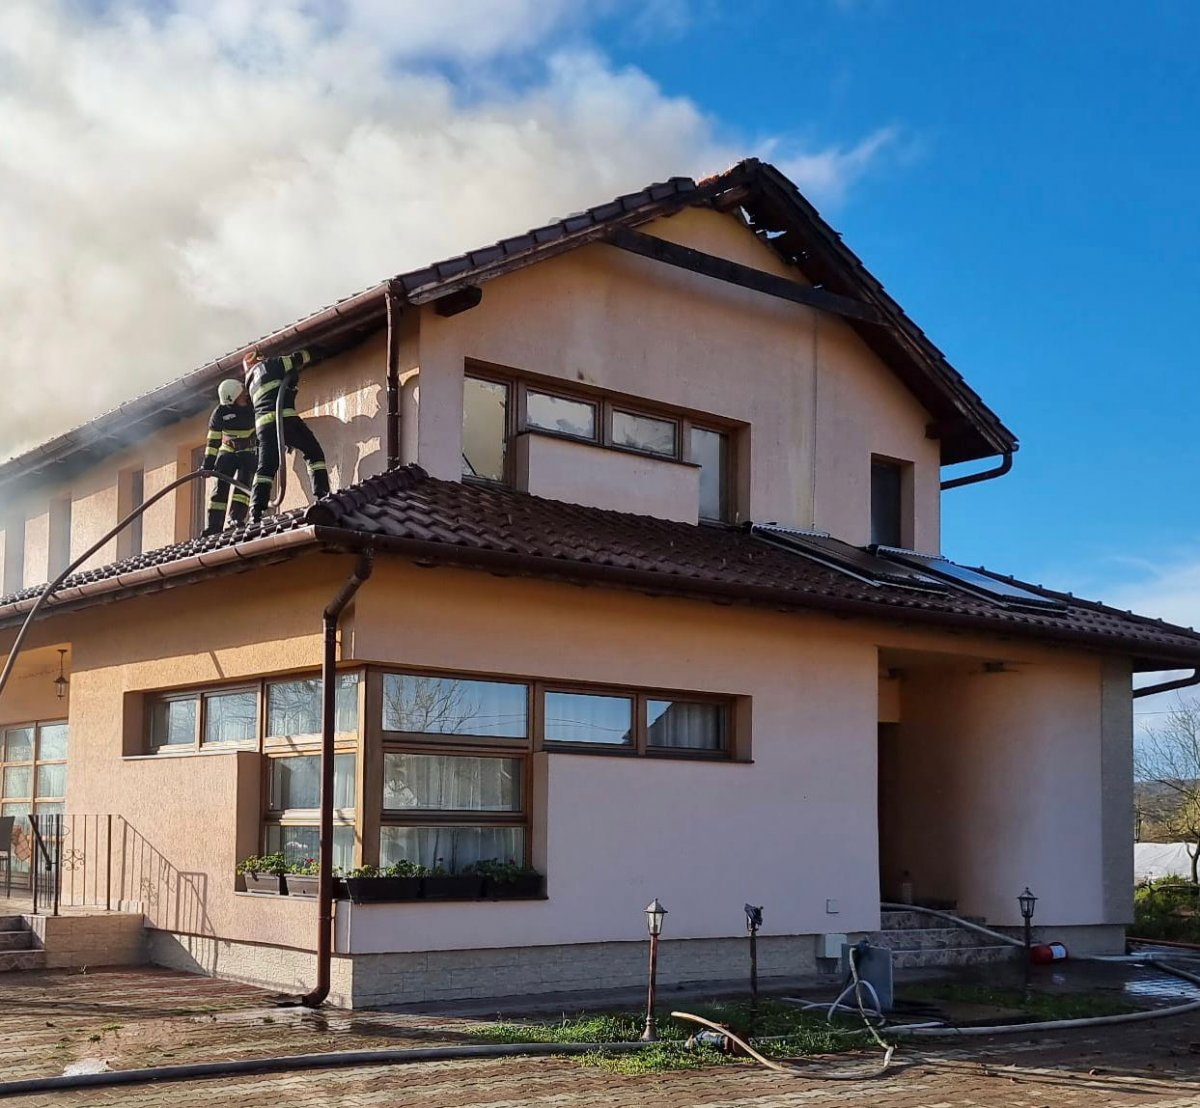 Incendiu izbucnit la o pensiune din localitatea Lalașinț